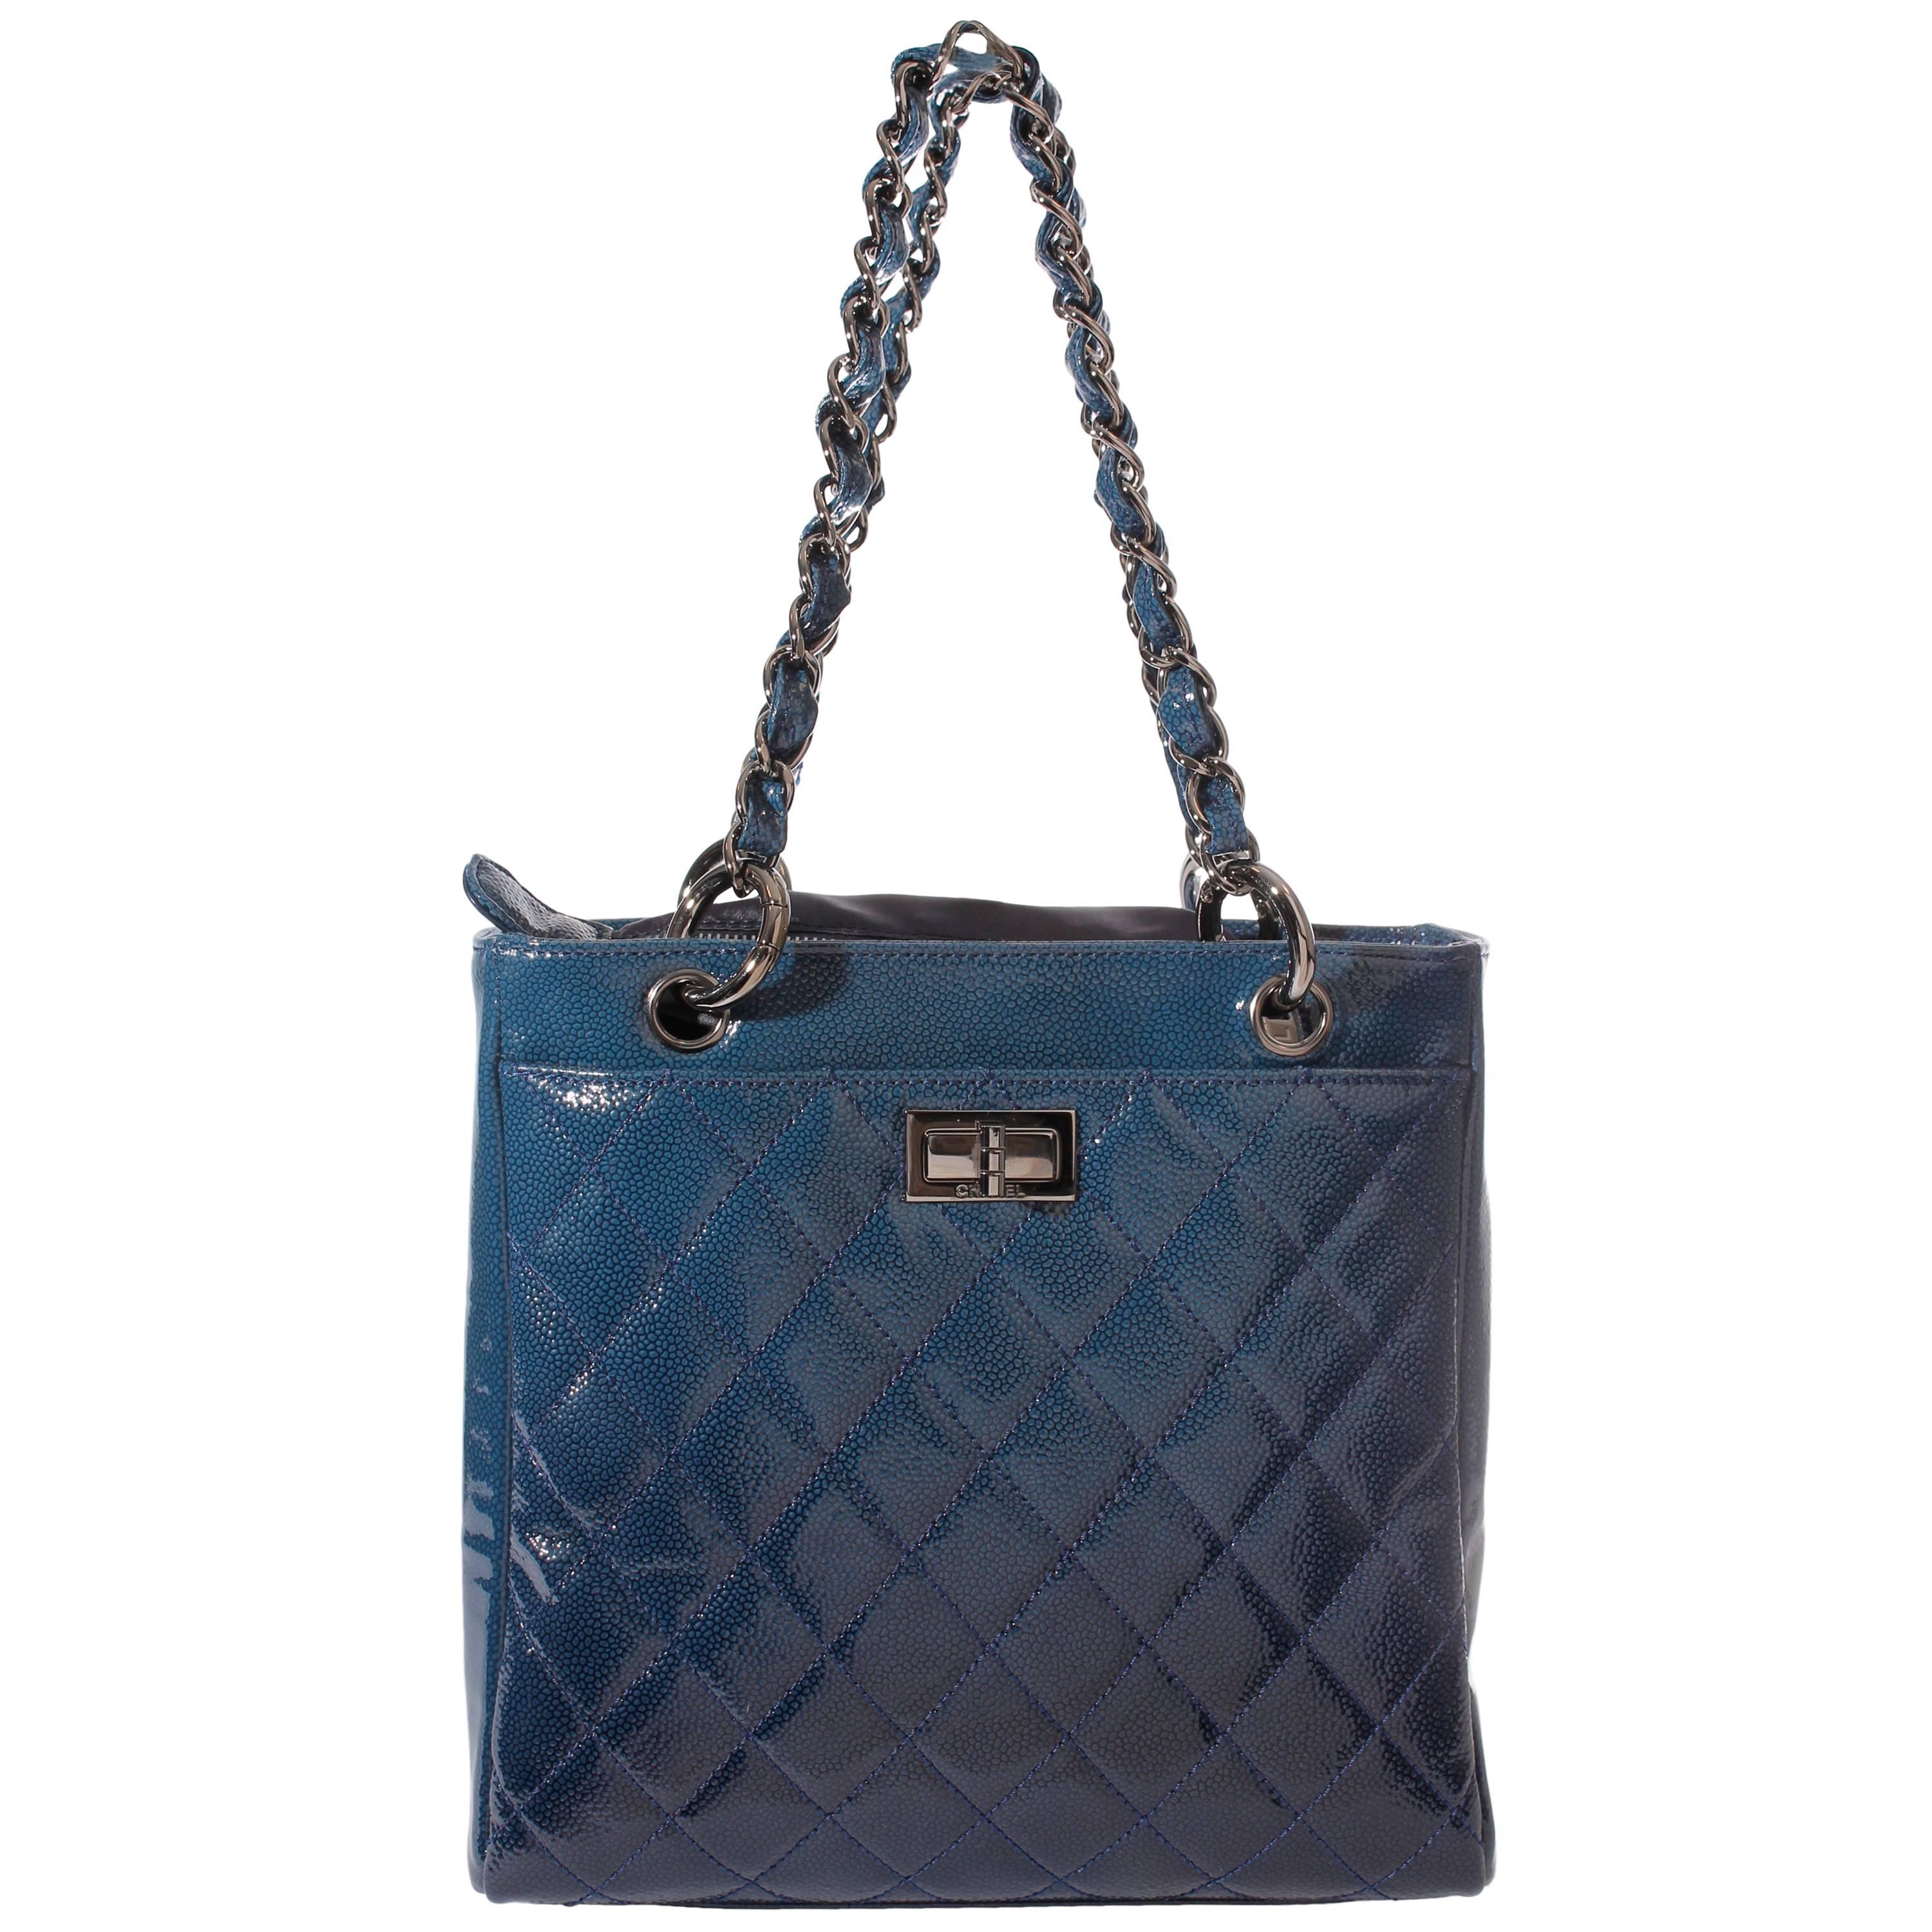 Chanel Mini Shopper Tote Bag - blue patent caviar leather